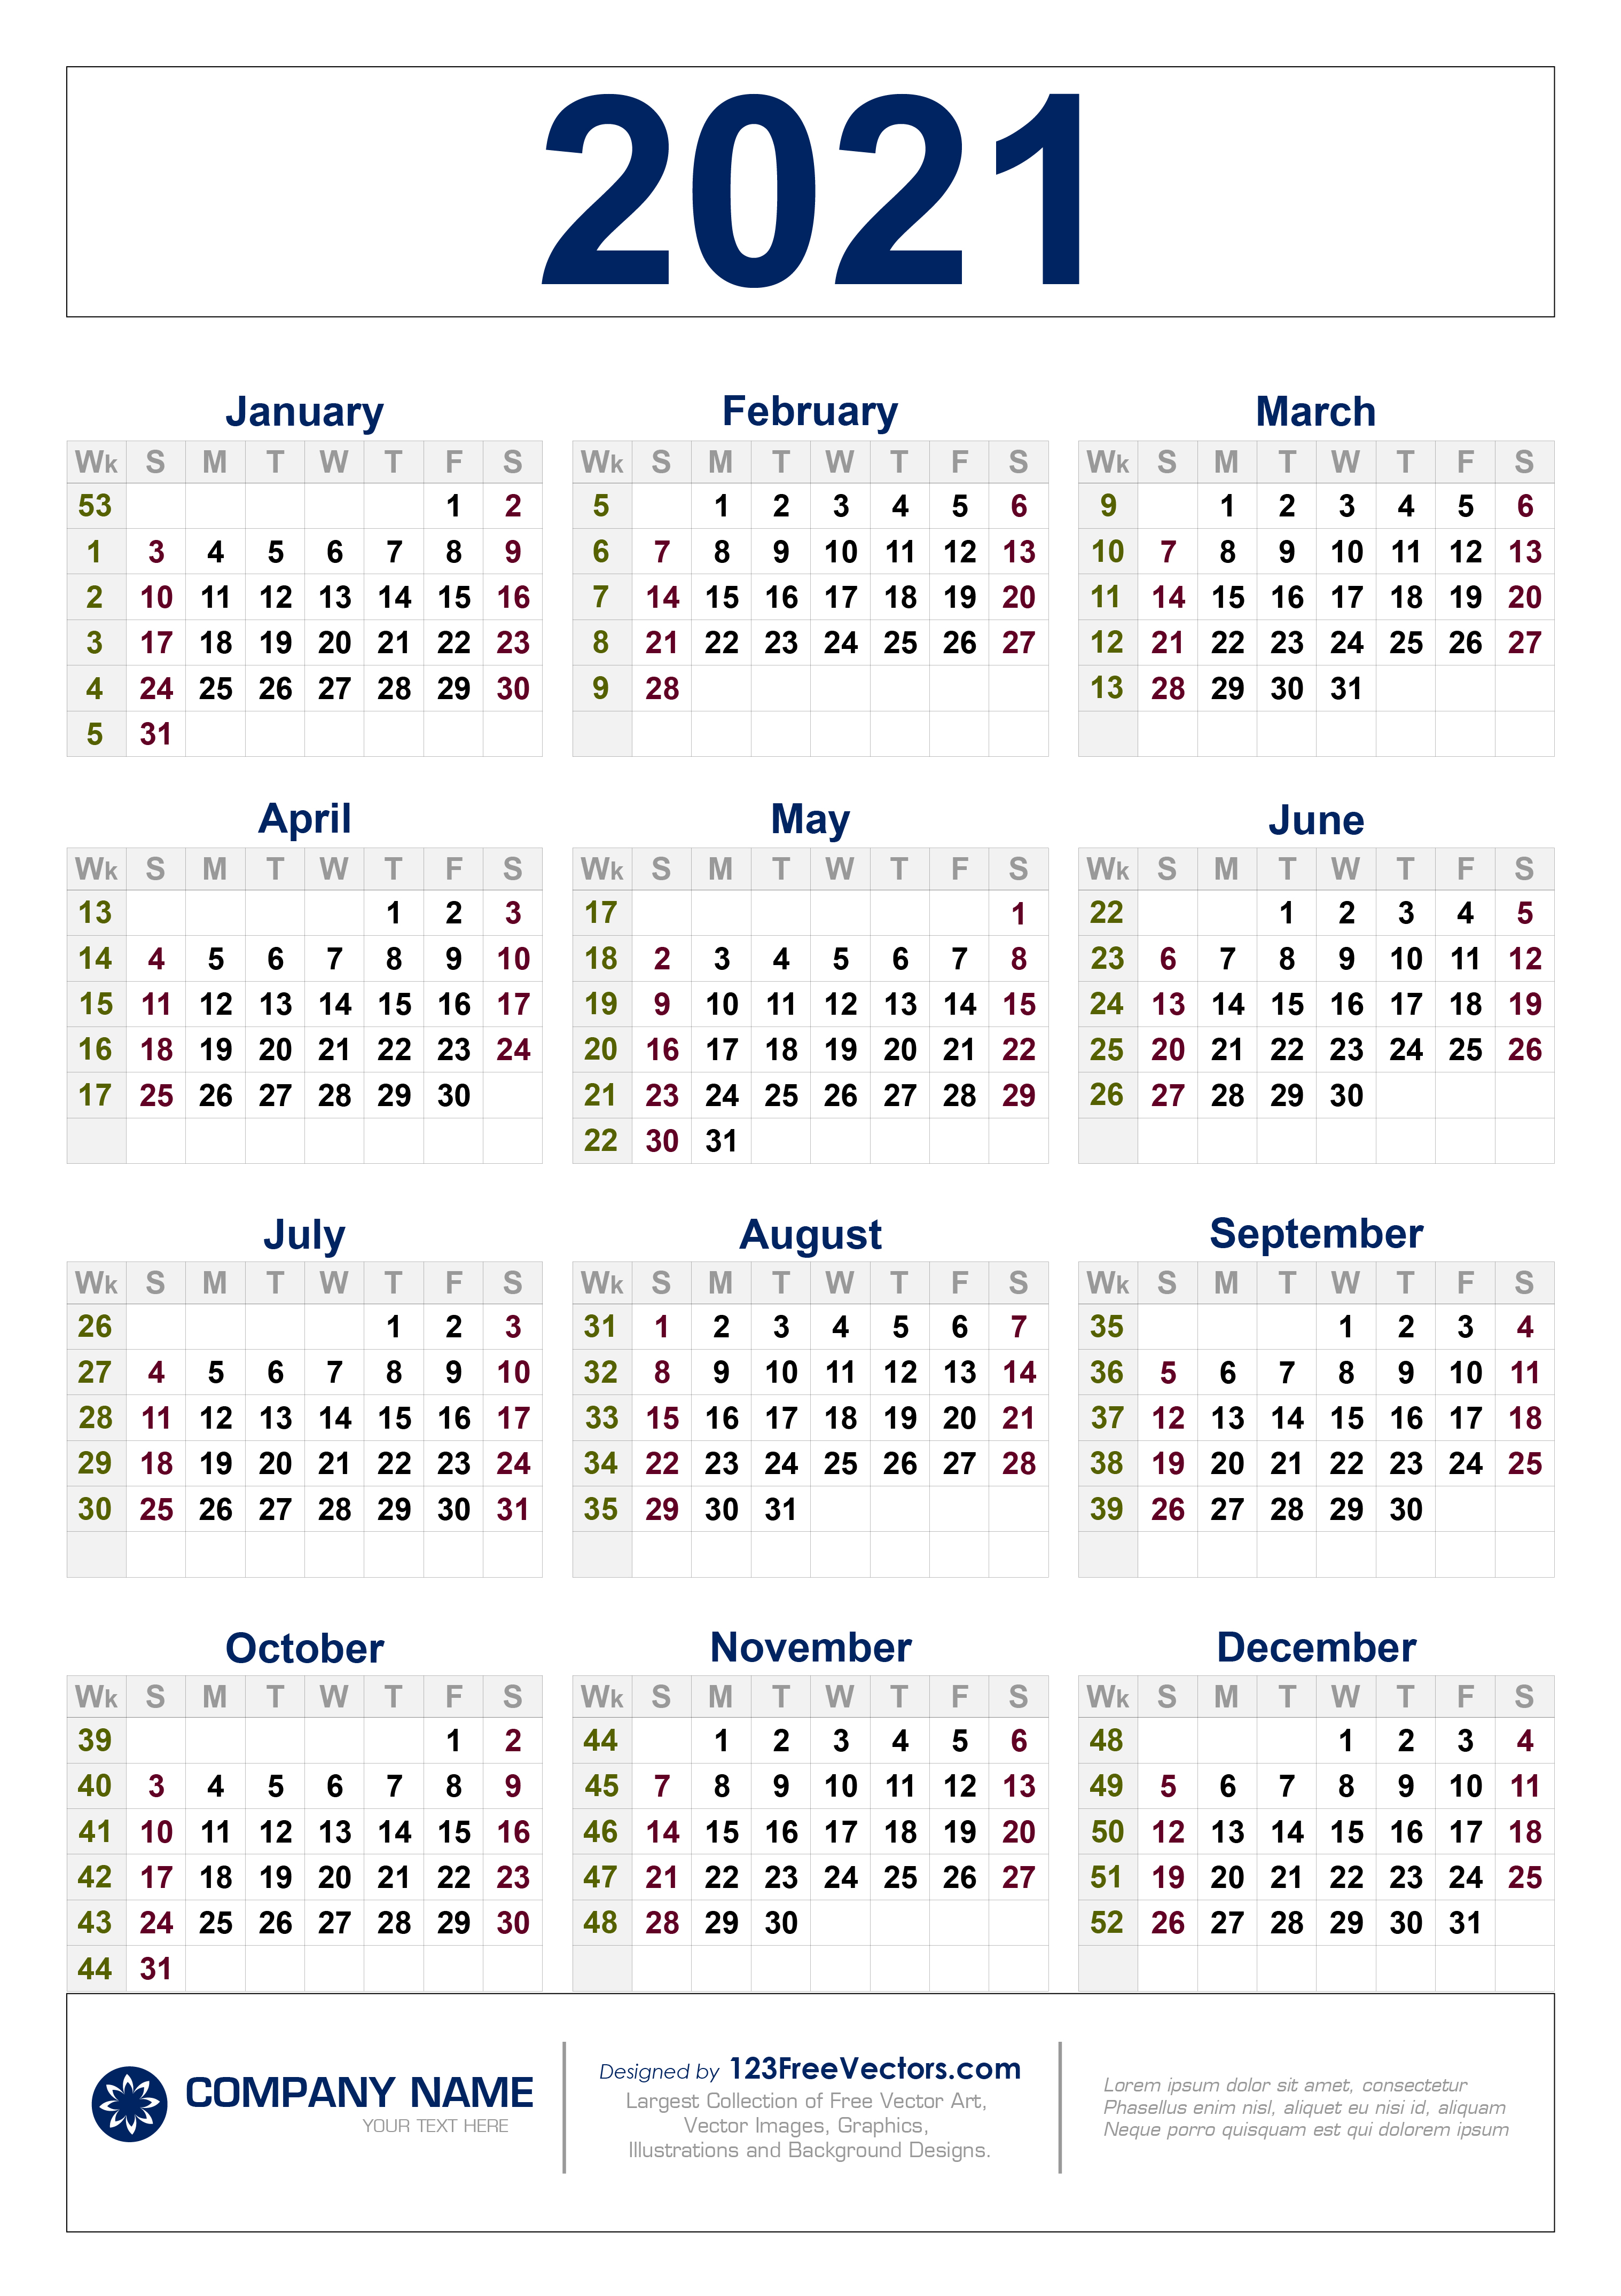 2021 Weekly Calendar Free Free Download 2021 Calendar with Week Numbers